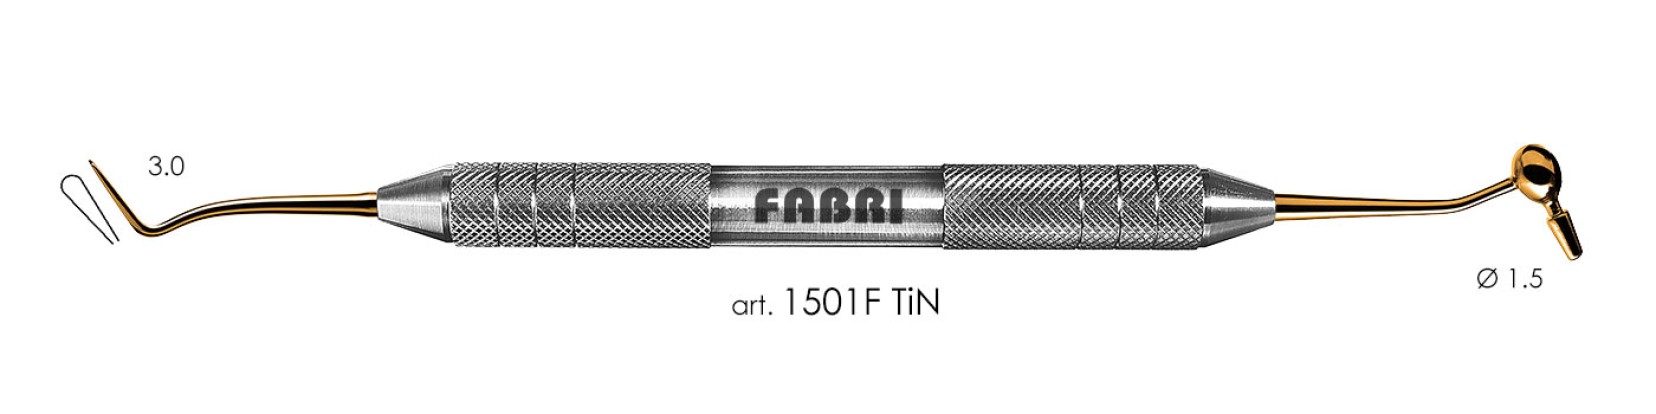 ФАБРИ Fabri  - Штопфер-конденсатор-гладилка. (арт. 1501 F TIN)